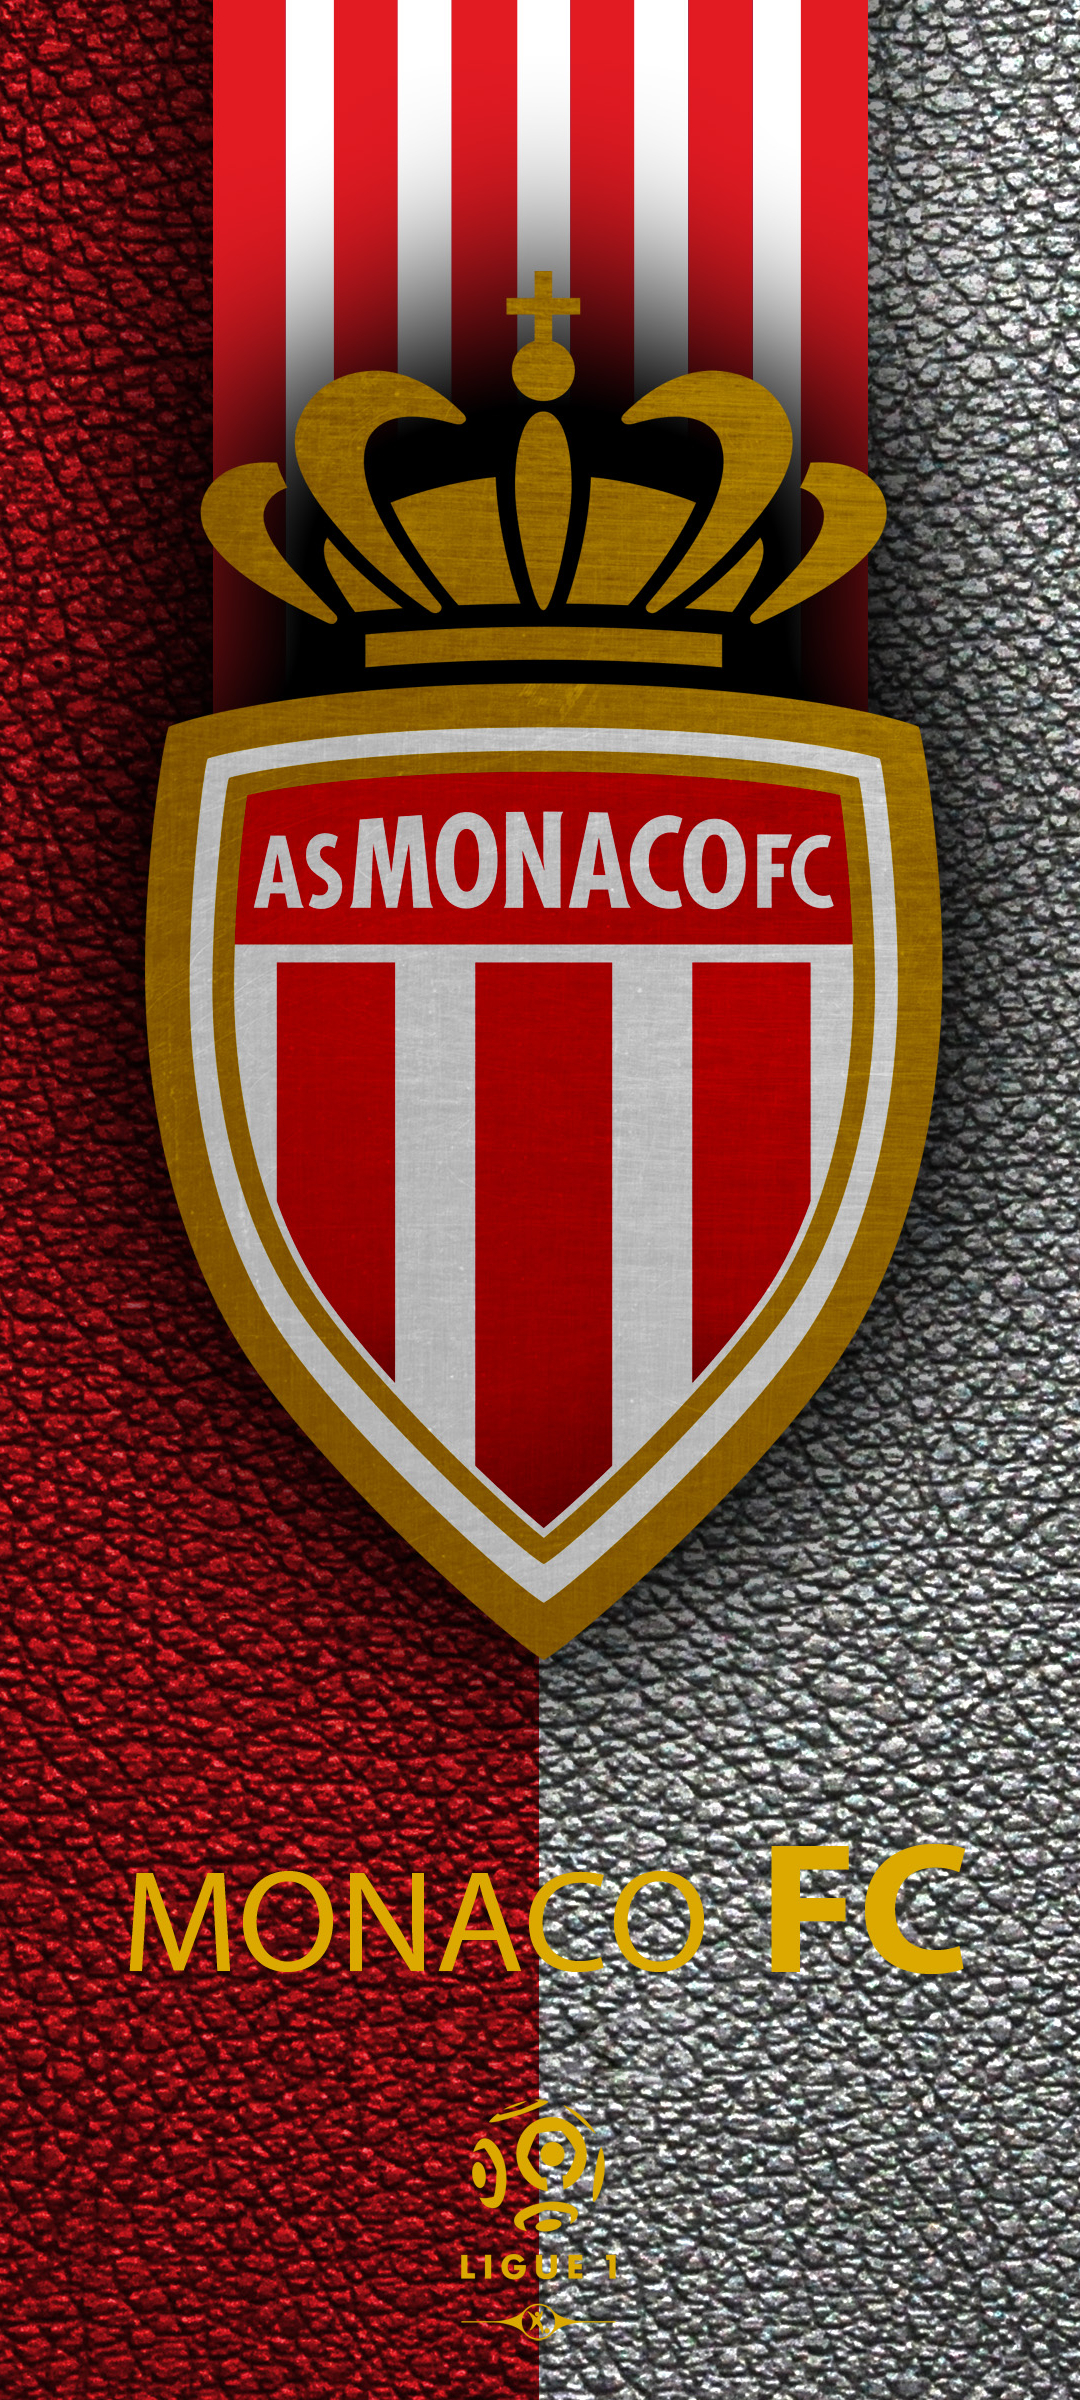 Descarga gratuita de fondo de pantalla para móvil de Fútbol, Logo, Emblema, Deporte, As Mónaco Fc.